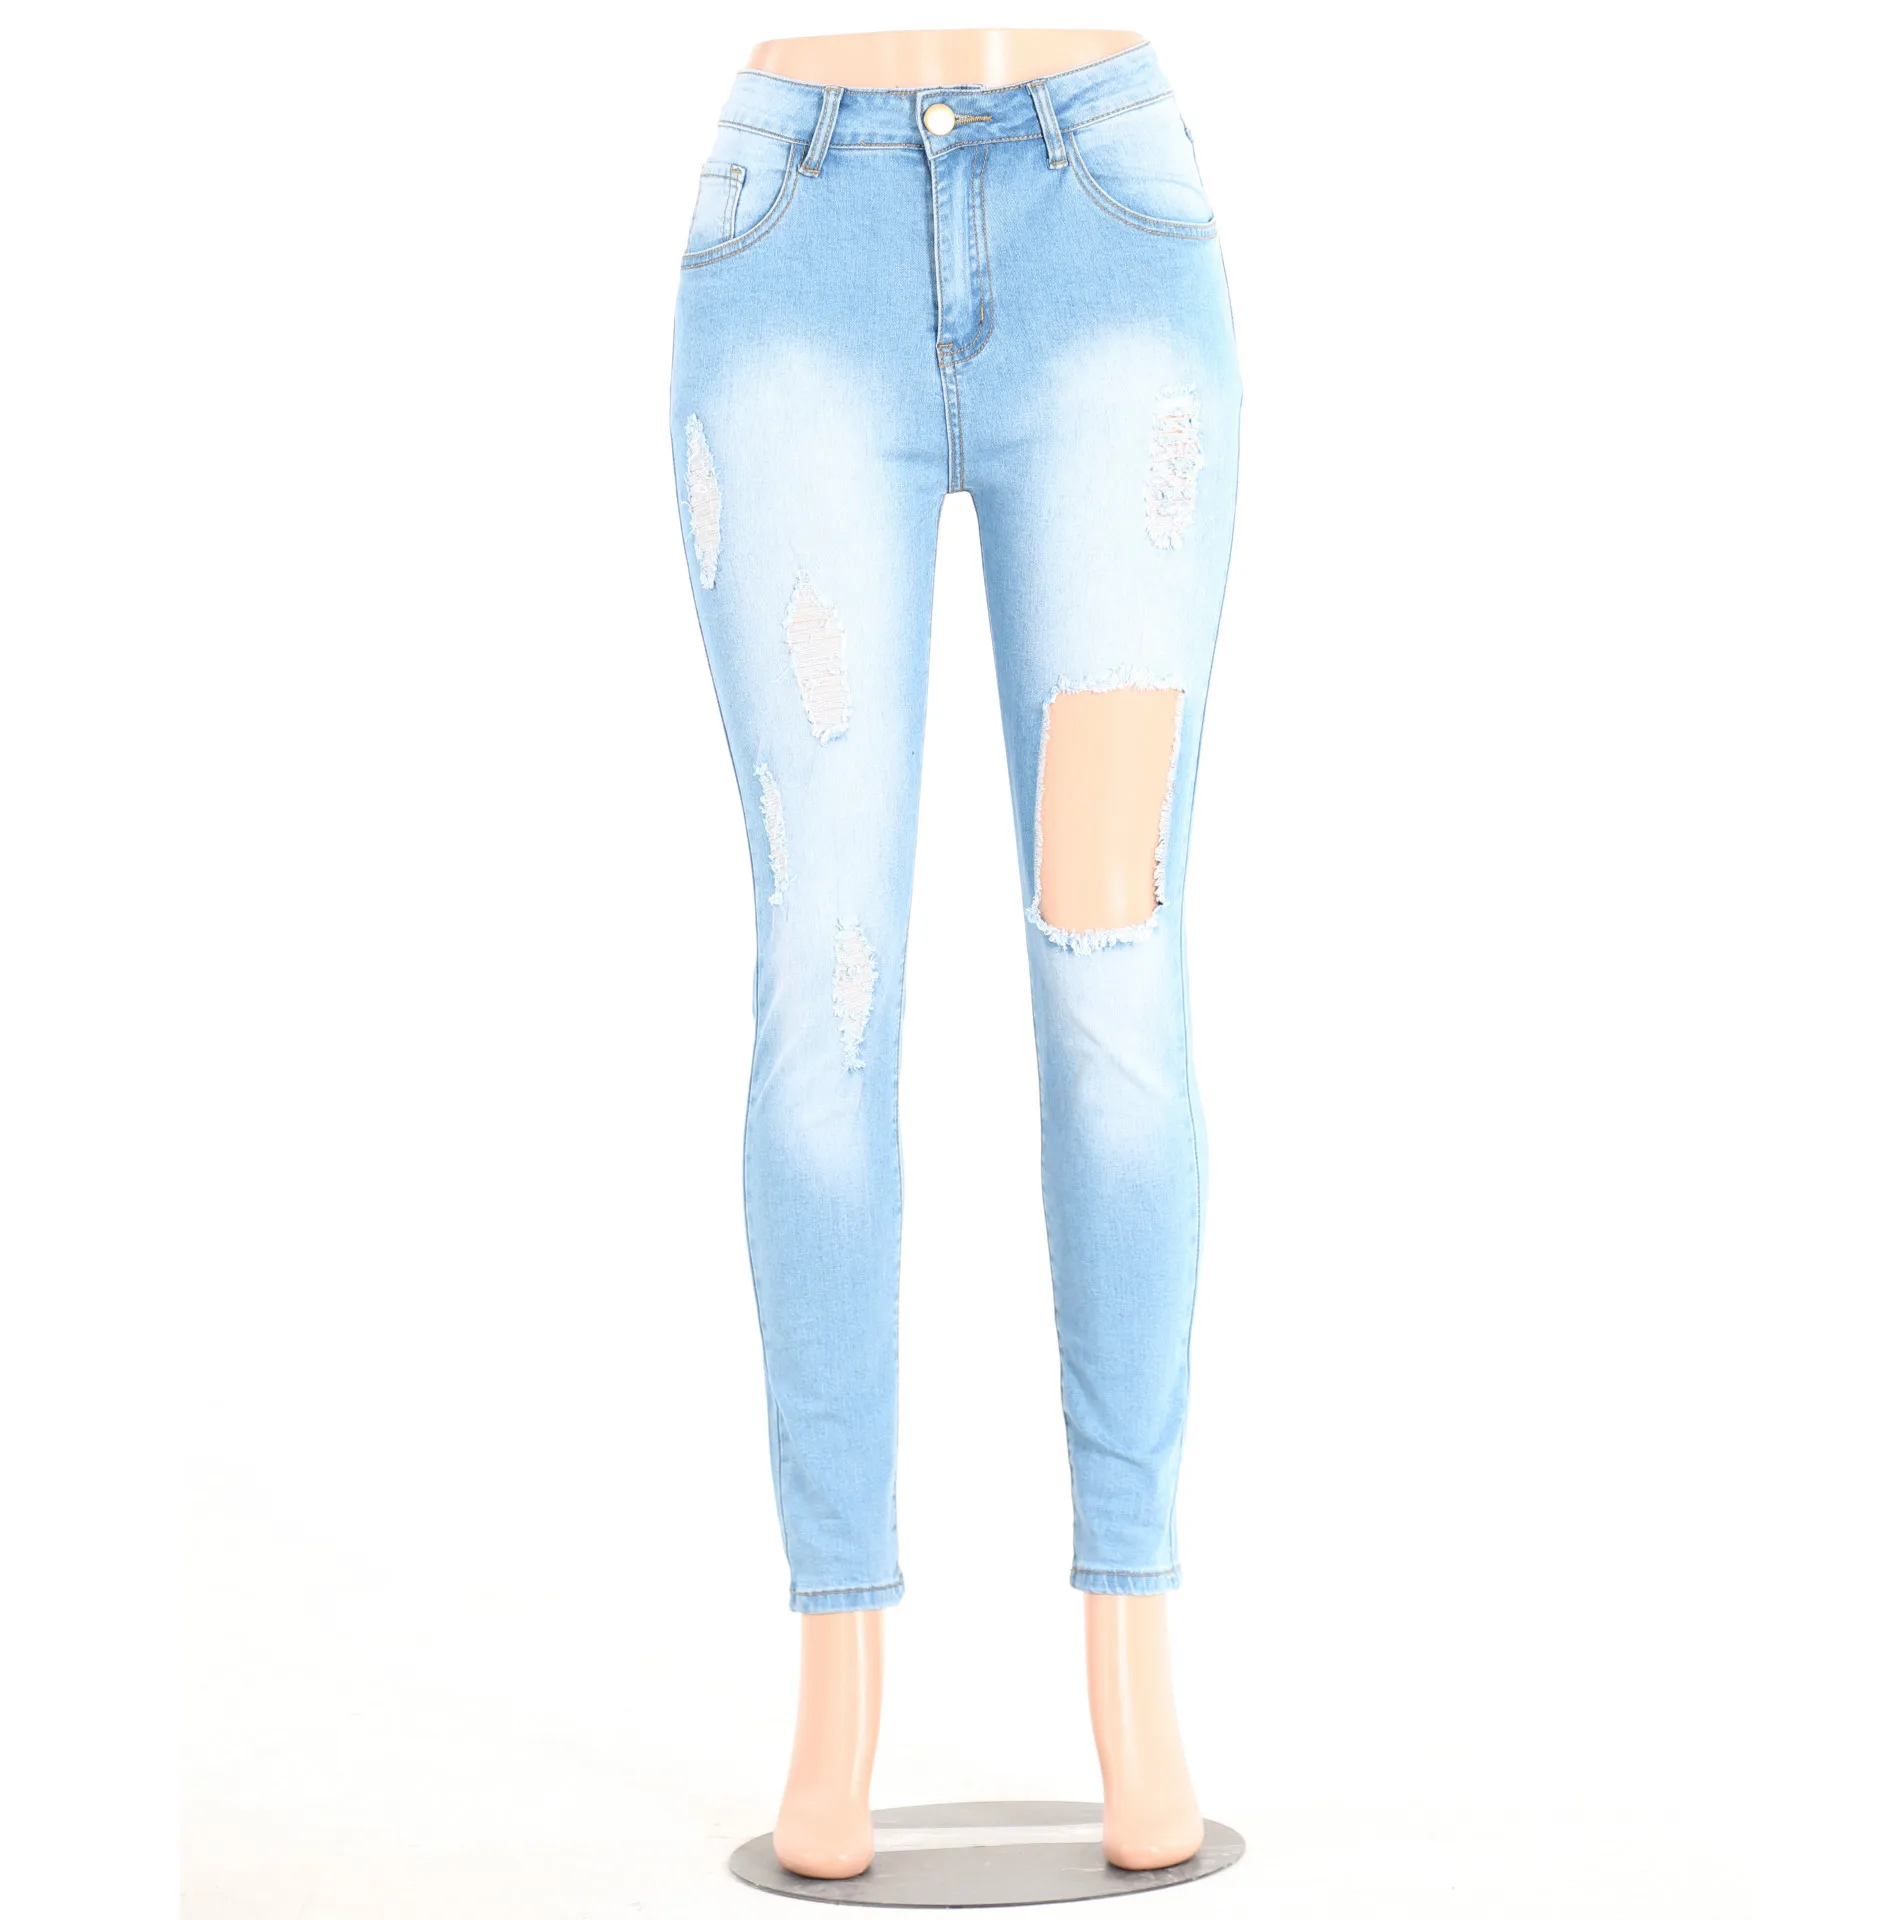 Новые сексуальные женские рваные джинсы скинни рваные брюки с высокой талией стрейч джинсы тонкие узкие брюки Плюс Размер Feminino